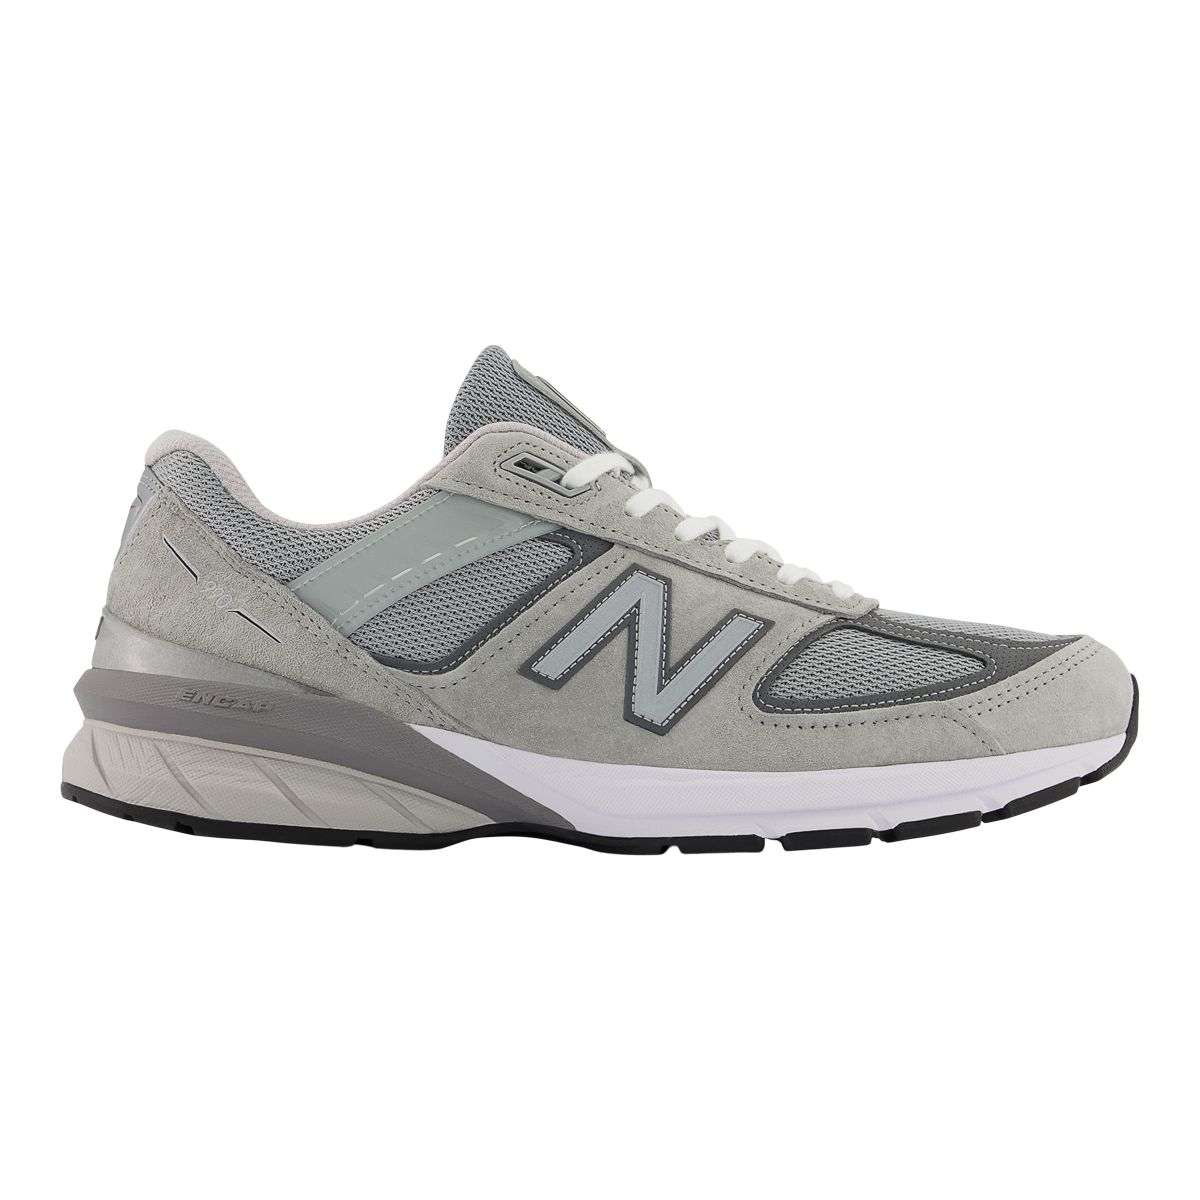 New Balance Men's 990v5 Running Shoes